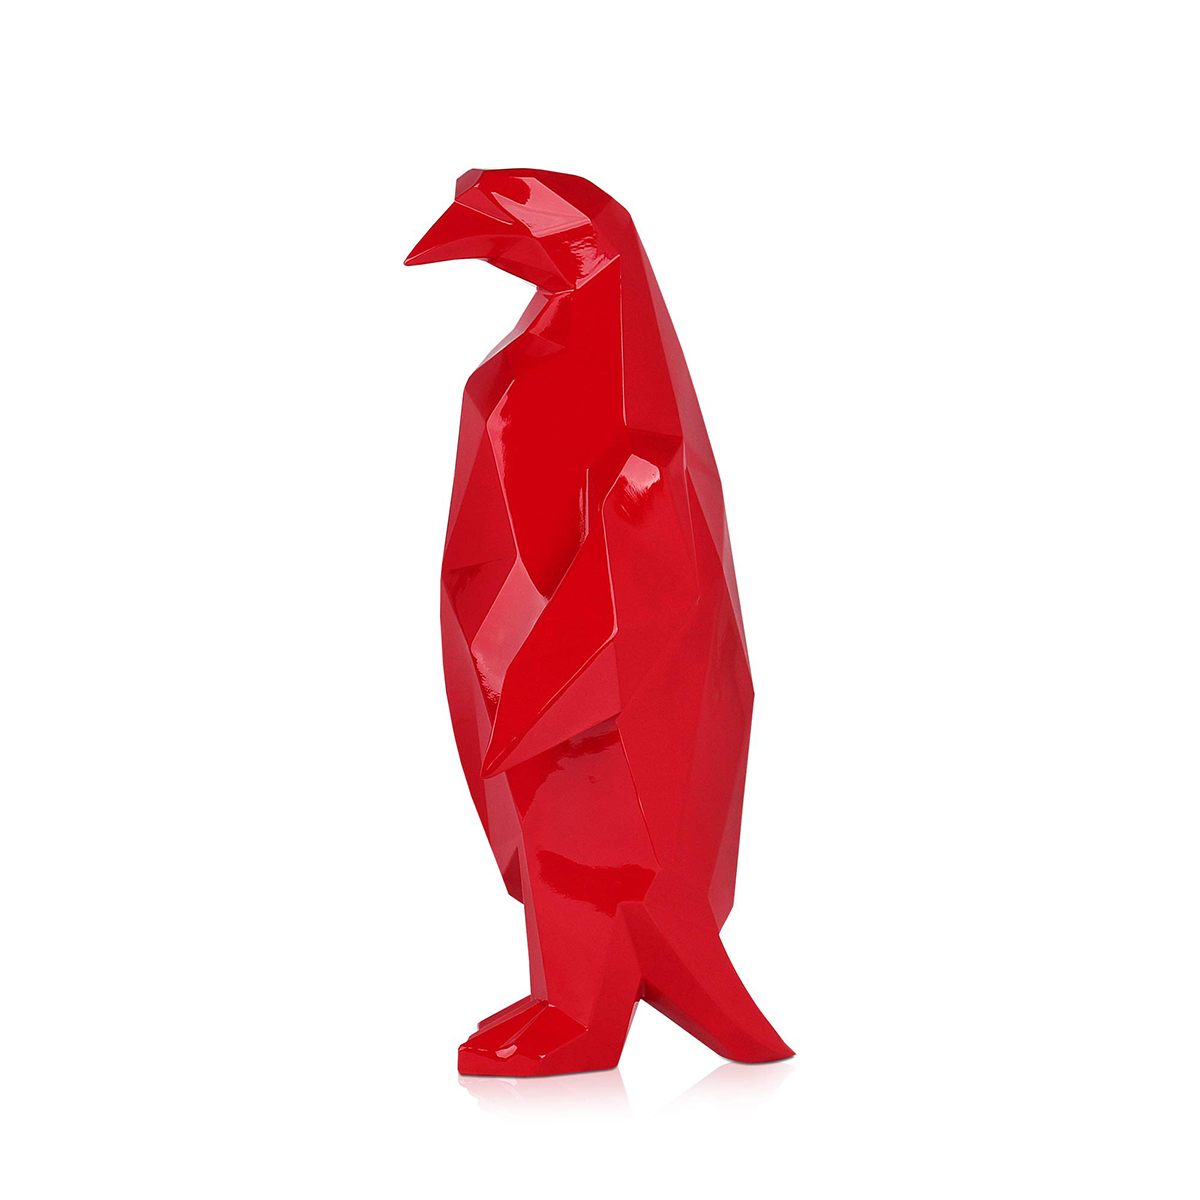 Resin Penguin Statues